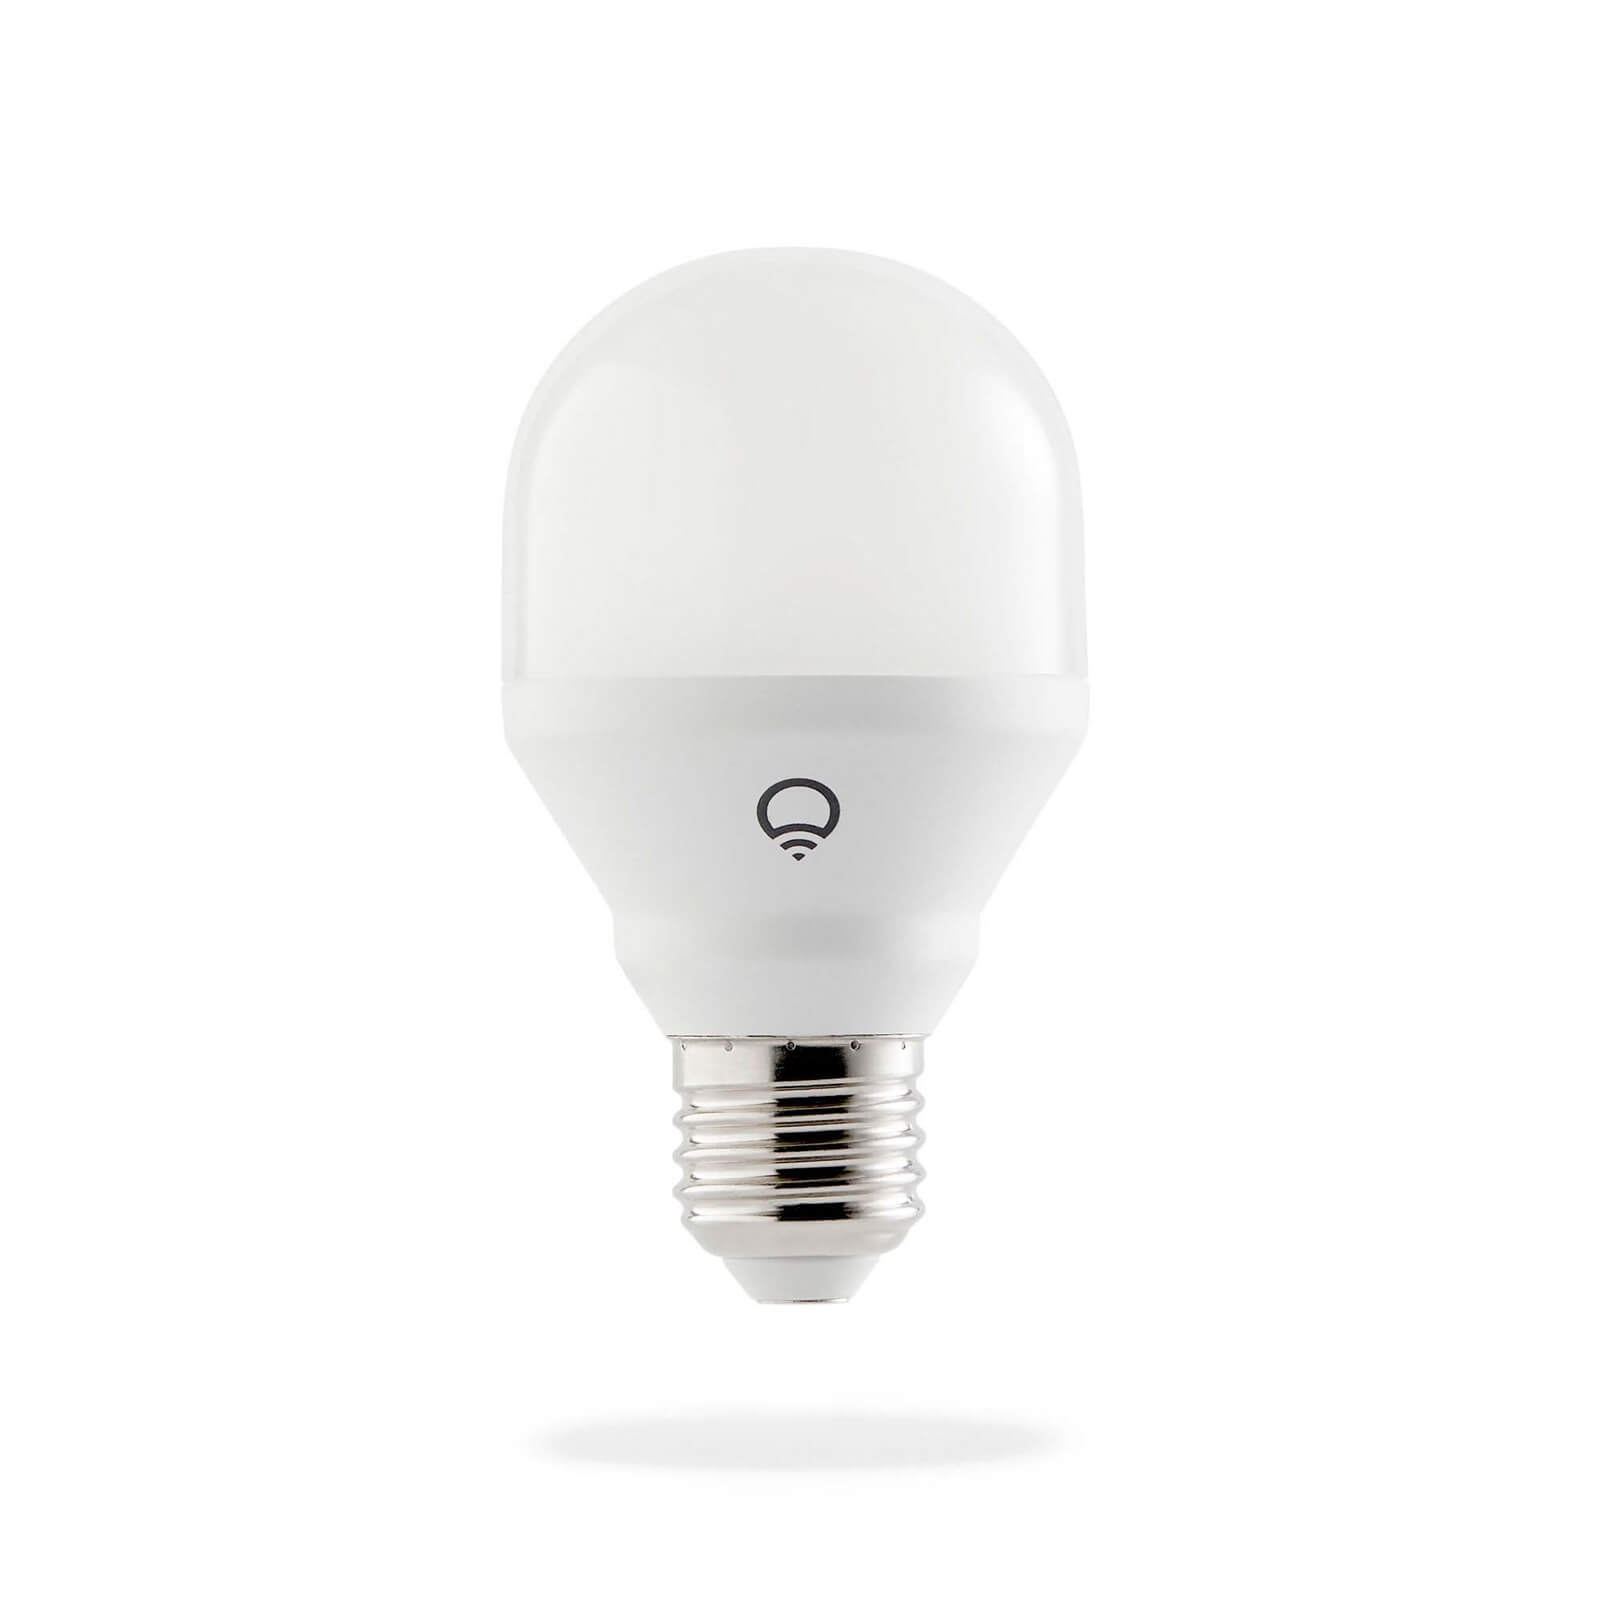 LIFX Mini (E27) Wi-Fi Smart LED Light Bulb - Colour